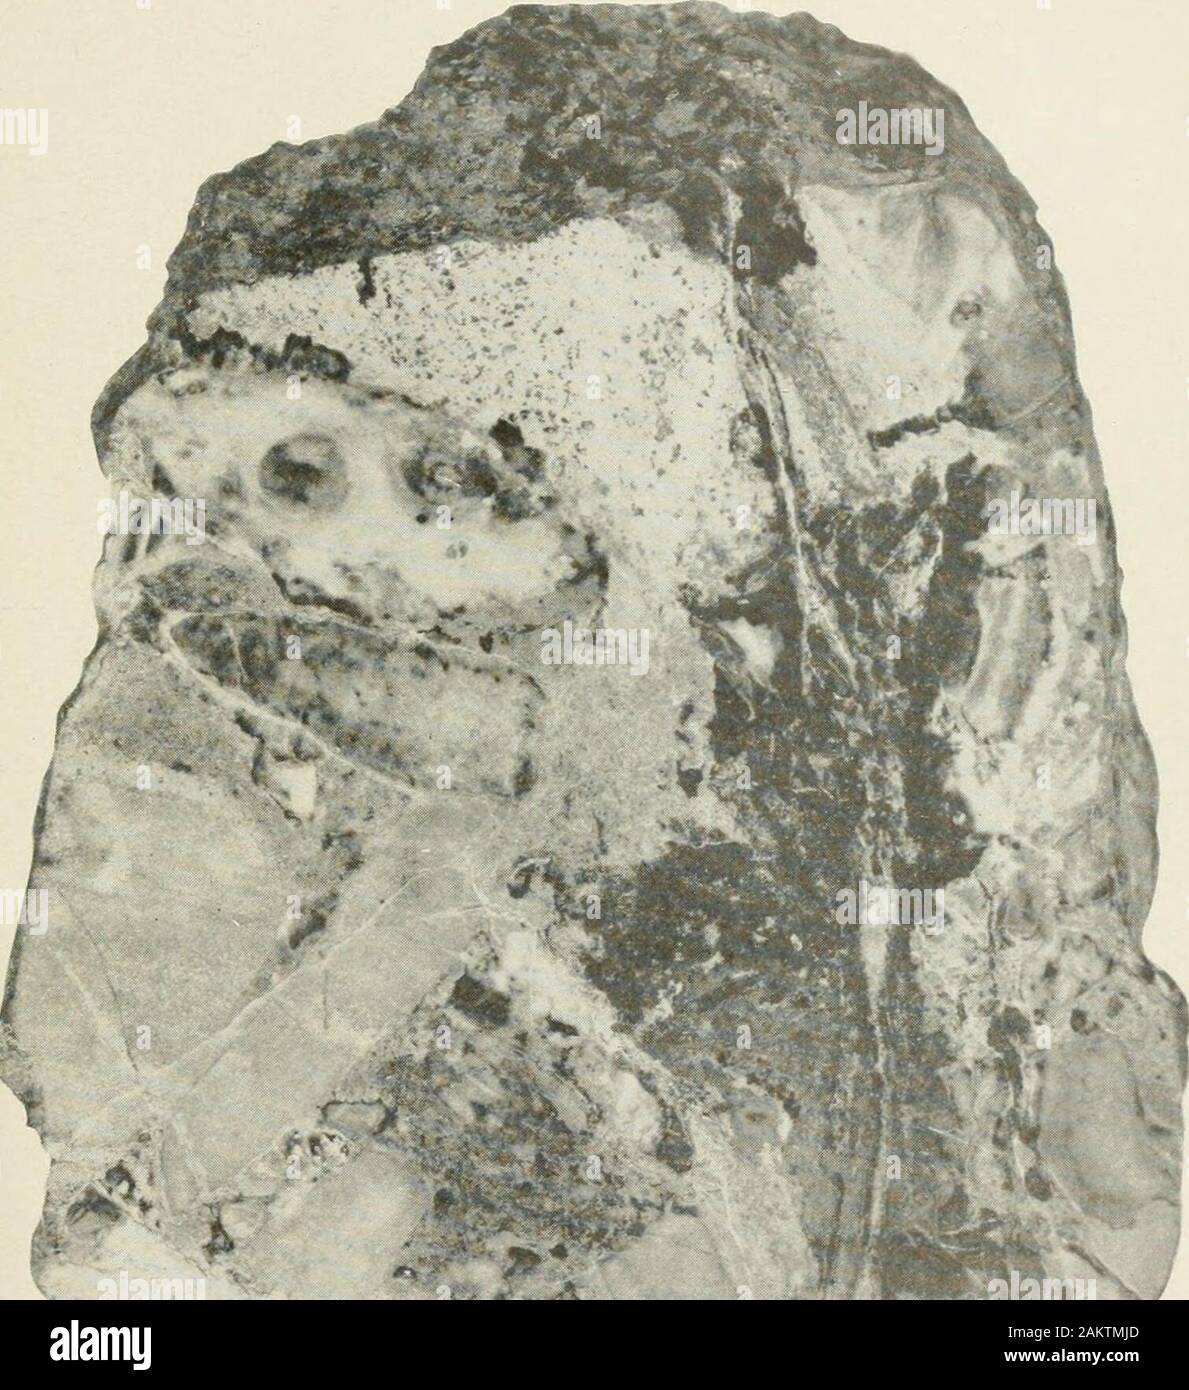 Actas del Museo Nacional de los Estados Unidos . 8 La mineralogía de caliza TEIASSIC SHANNON 31 los diques de basalto como se ha descrito anteriormente. Se forma una masa irregular15 milímetros de diámetro máximo, variando desde los bordes para whiteat calizo violáceo translúcido gris en el centro. Es costumbre lusterless dela superficie y flinty fractura. Las EXPLICACIONES DE LAS PLACAS Placa 1 Sustitución del conglomerado de piedra caliza a lo largo de una estrecha fisura. Muestra el cambio de la arena calcárea que forman la matriz de los guijarros por amixture de Diopsido vesuvianita y granates y, más cerca de la fisura, posteriormente re-colocación por Foto de stock